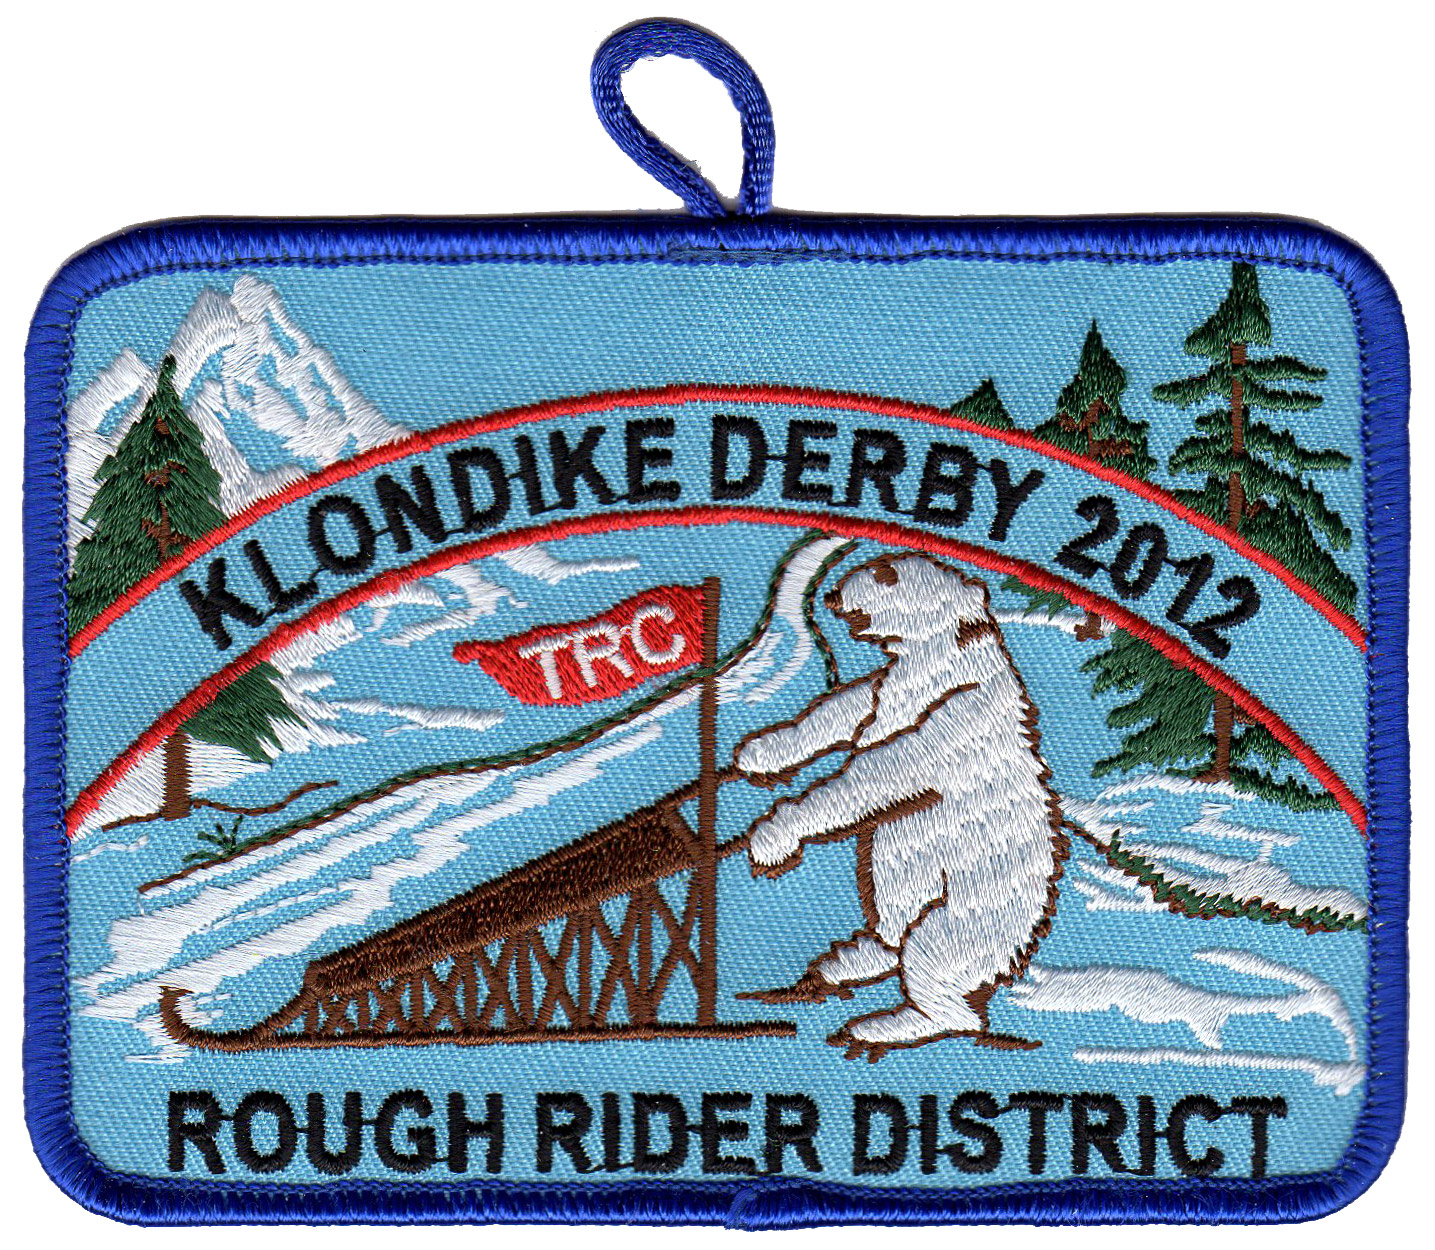 2012 Klondike Derby